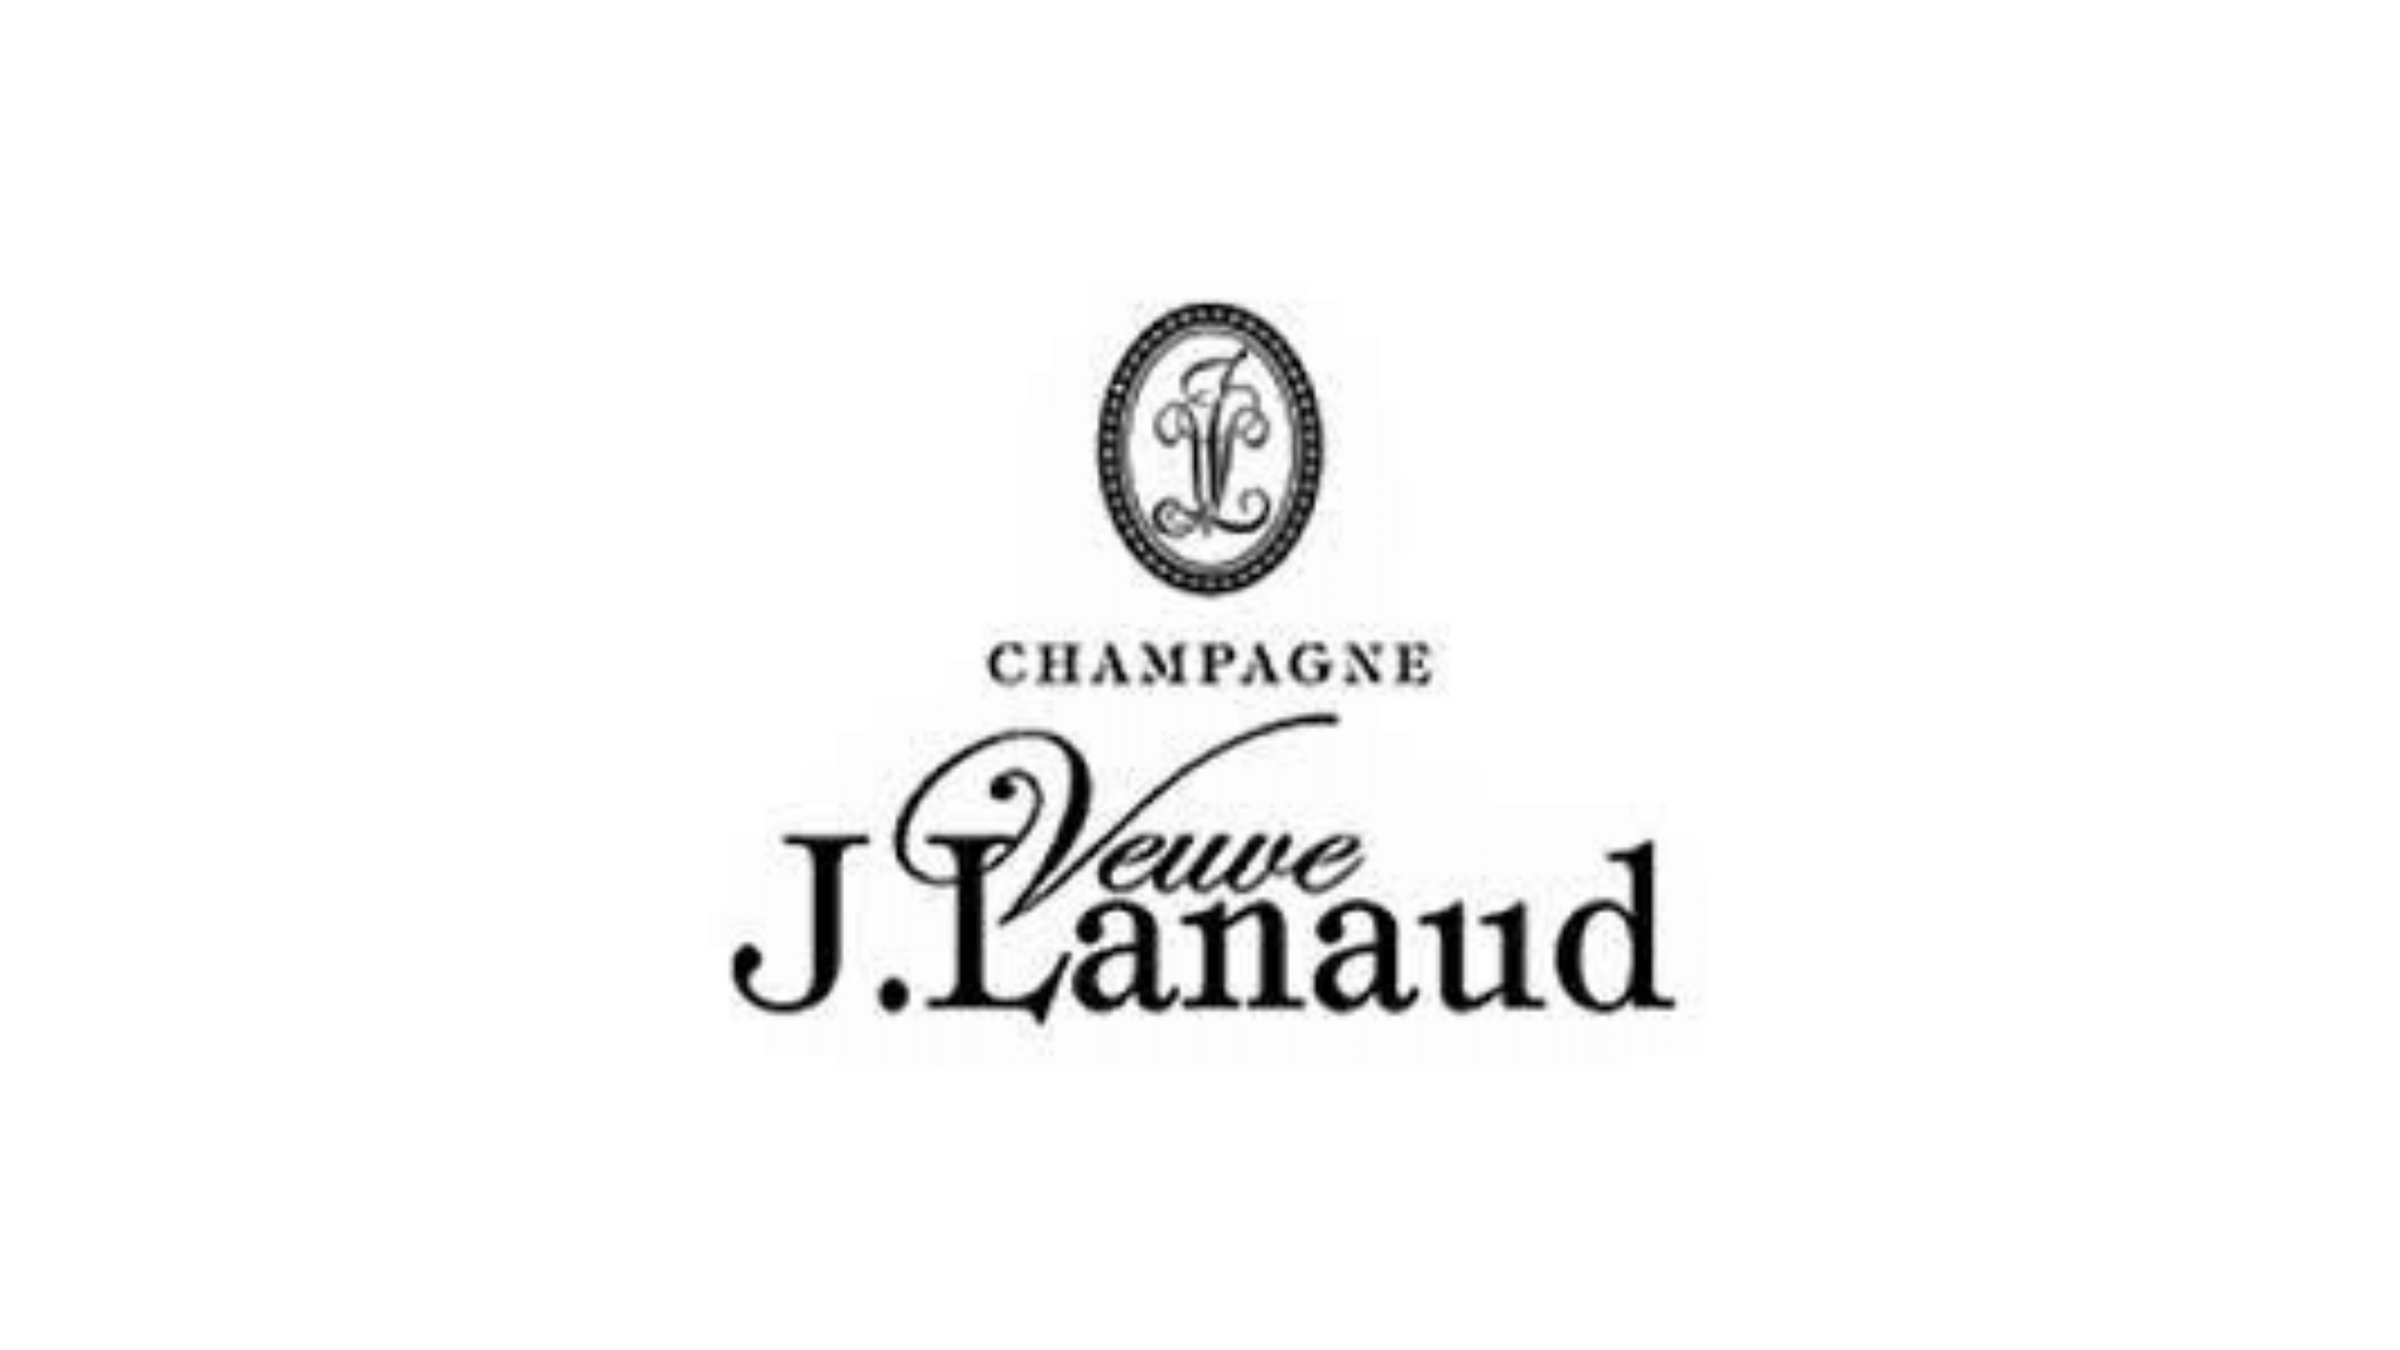 Veuve J. Lanaud – Champagnifique